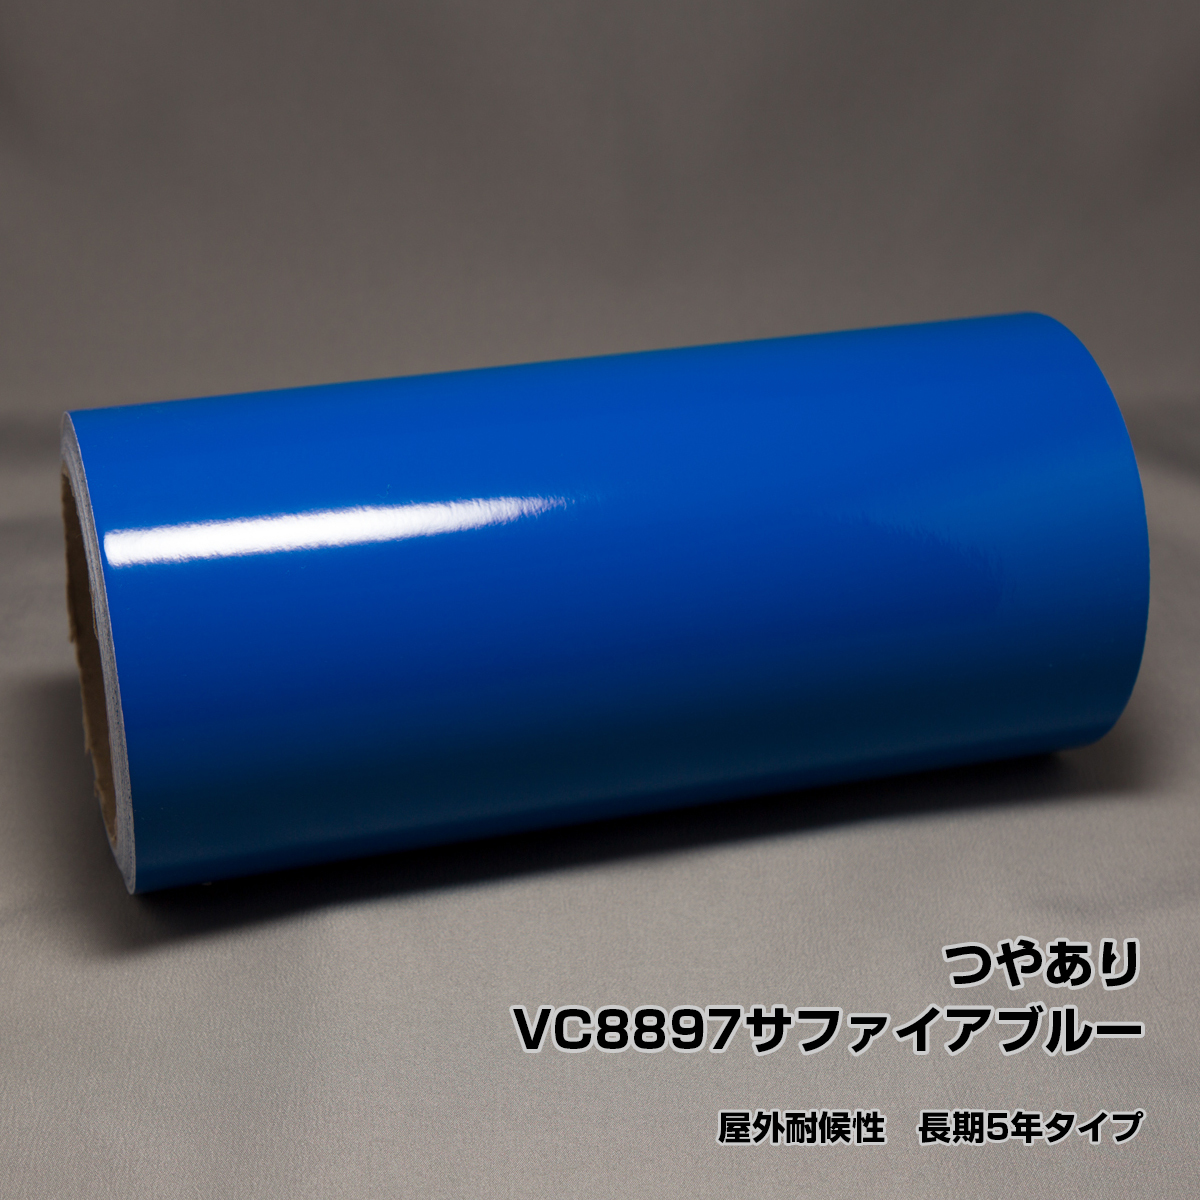 29cm×10m VC8897 сапфир голубой наружный атмосферостойкий долгое время 5 год модель маркировка сиденье разрезной плёнка стерео kaSX-12 SV-12 SX-15 SV-15